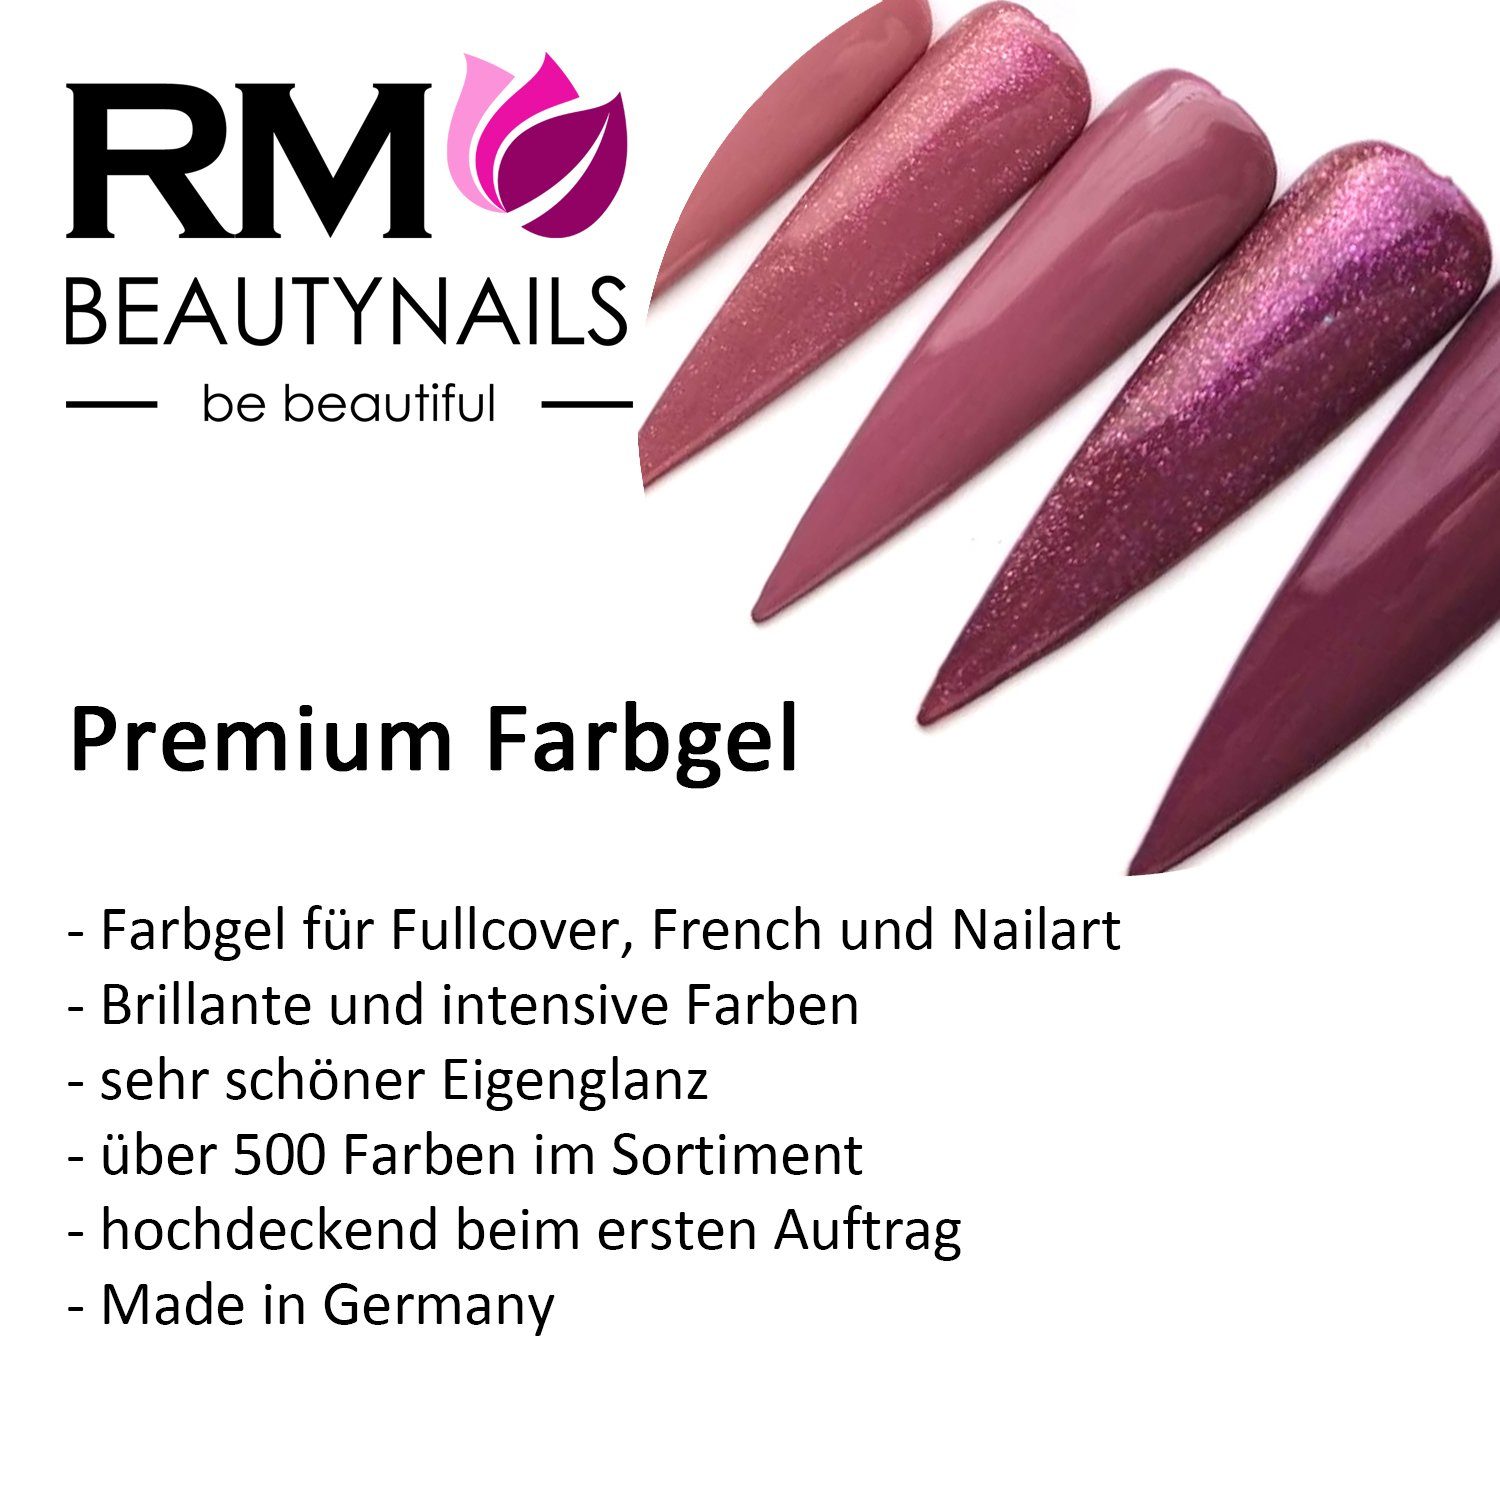 RM Beautynails UV-Gel Farbgel Set 5 Nagelgel Ledgel Set Rot 5ml x UV-Gel